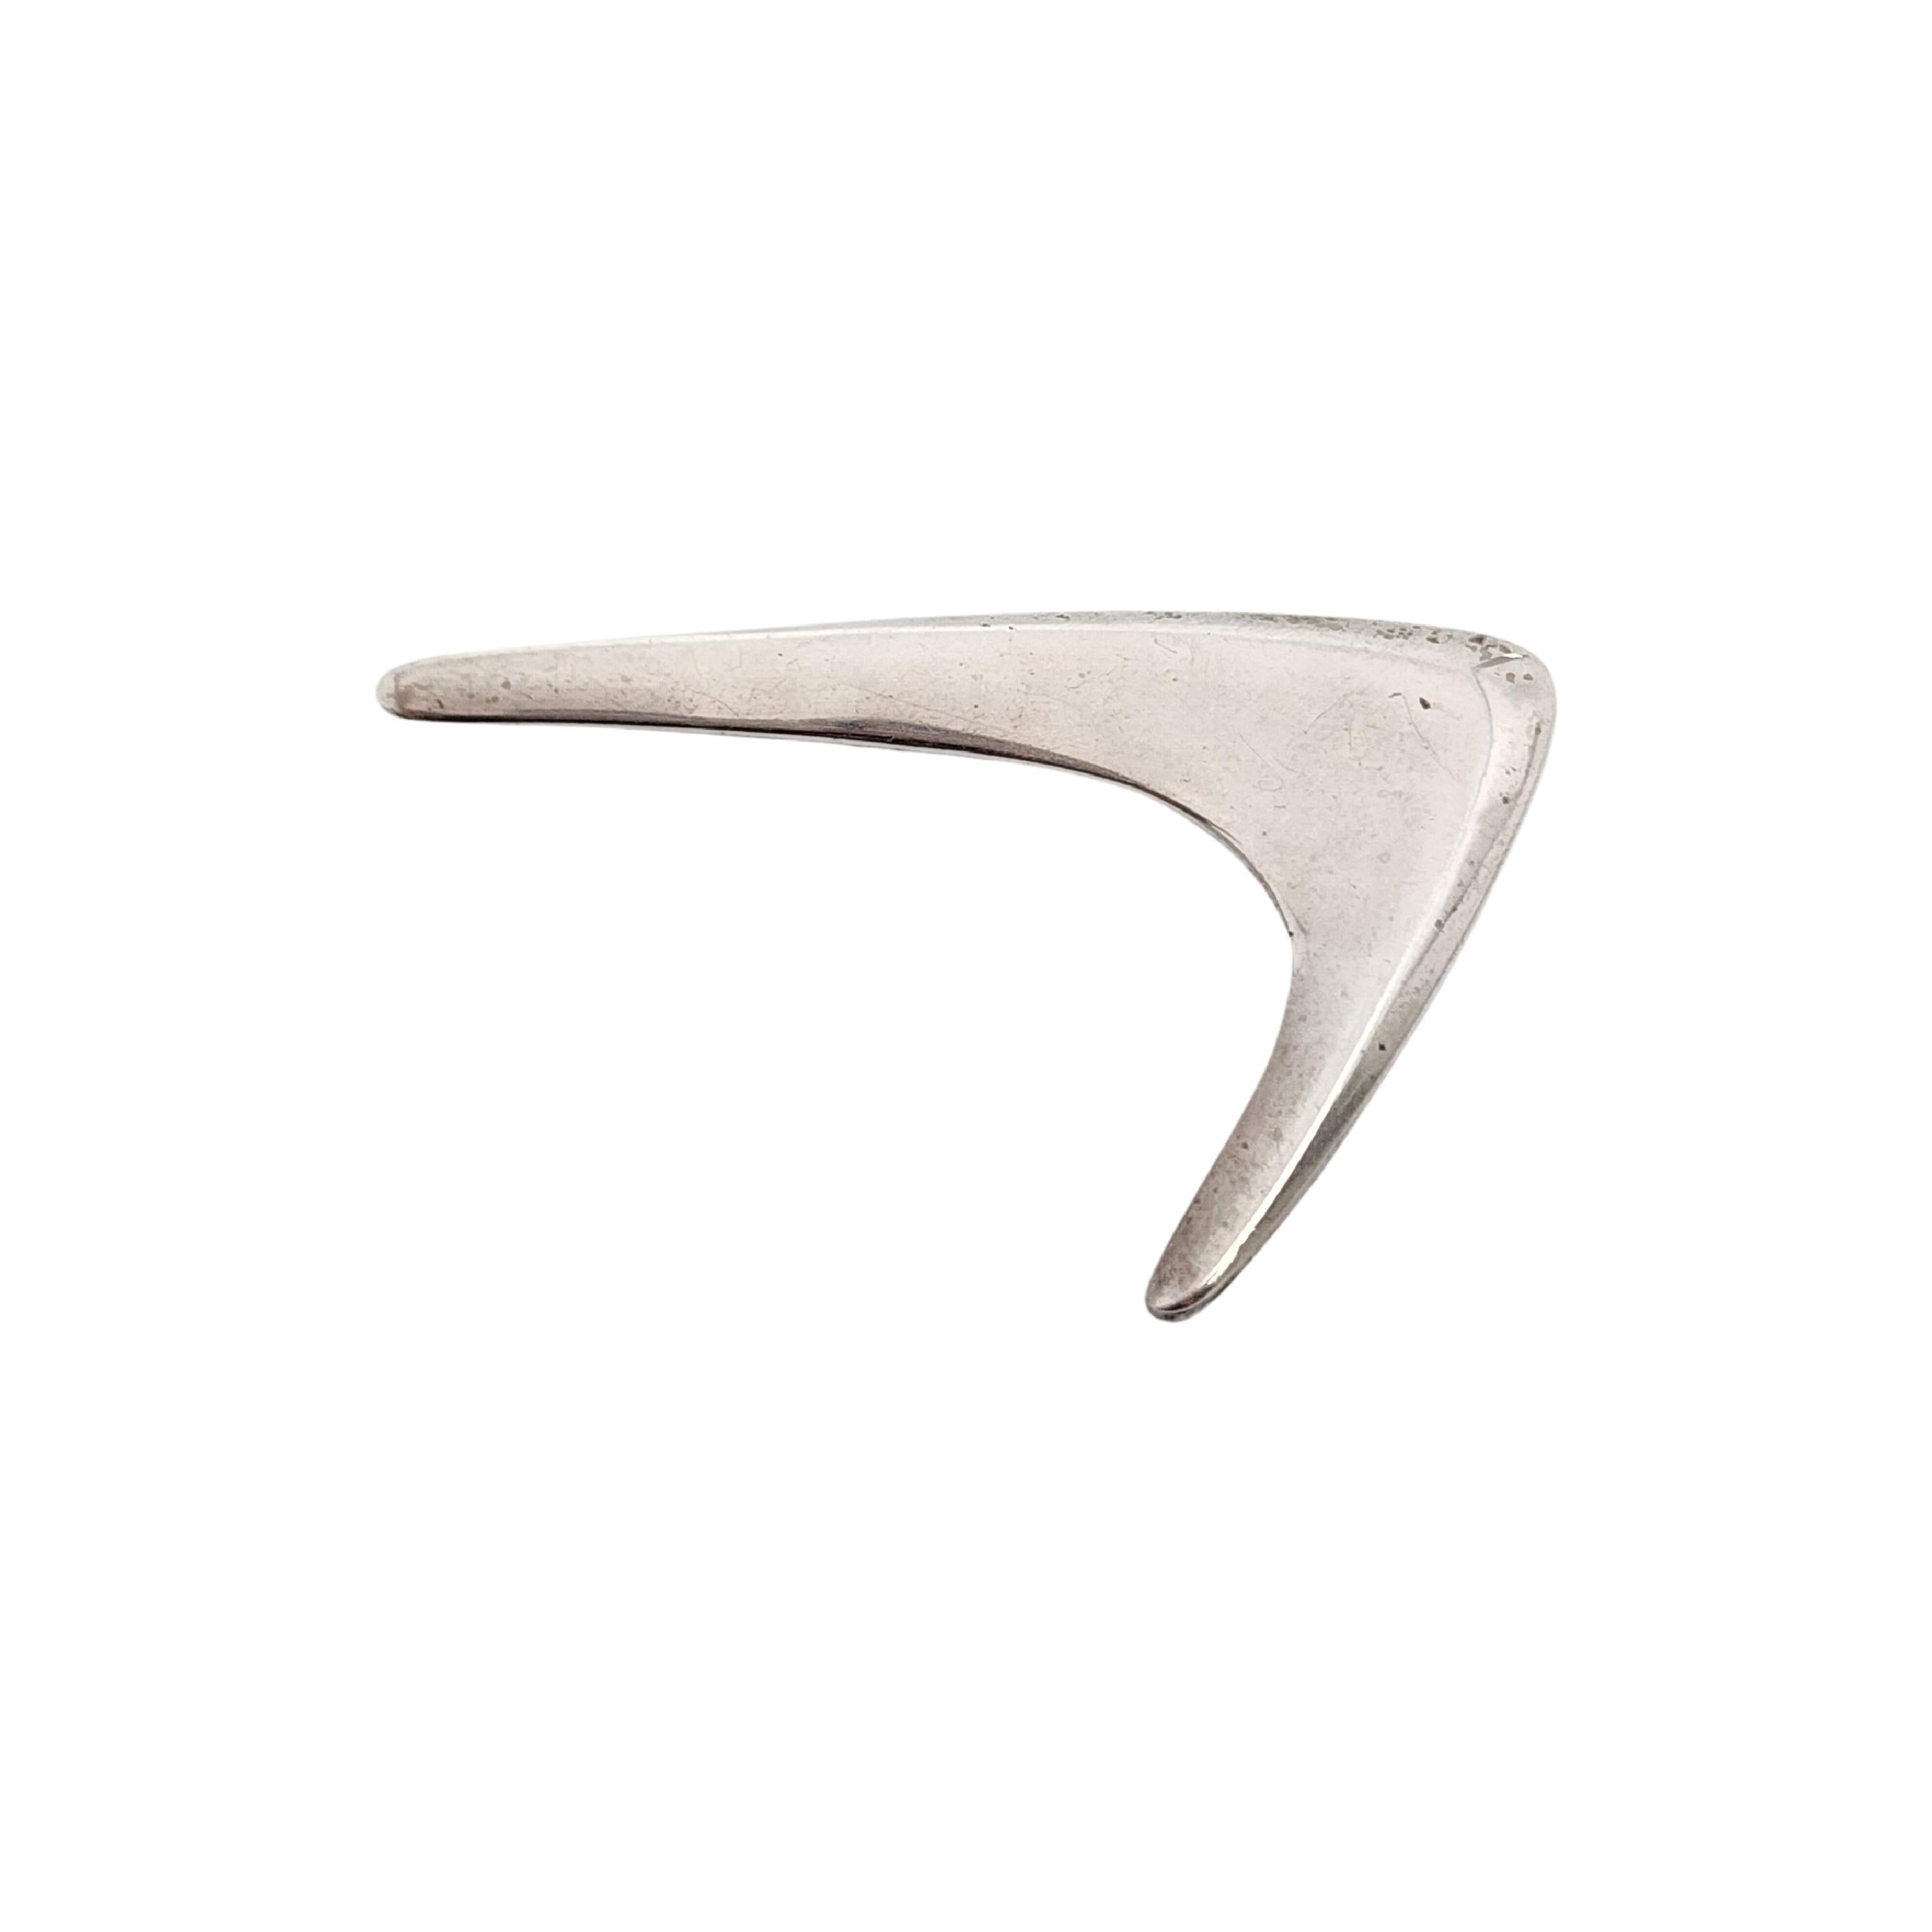 Bumerang-Anstecknadel/Brosche aus Sterlingsilber von Hermann Siersbol aus Dänemark.

Modernistische Brosche in Bumerangform.

Maße: ca. 2 1/8